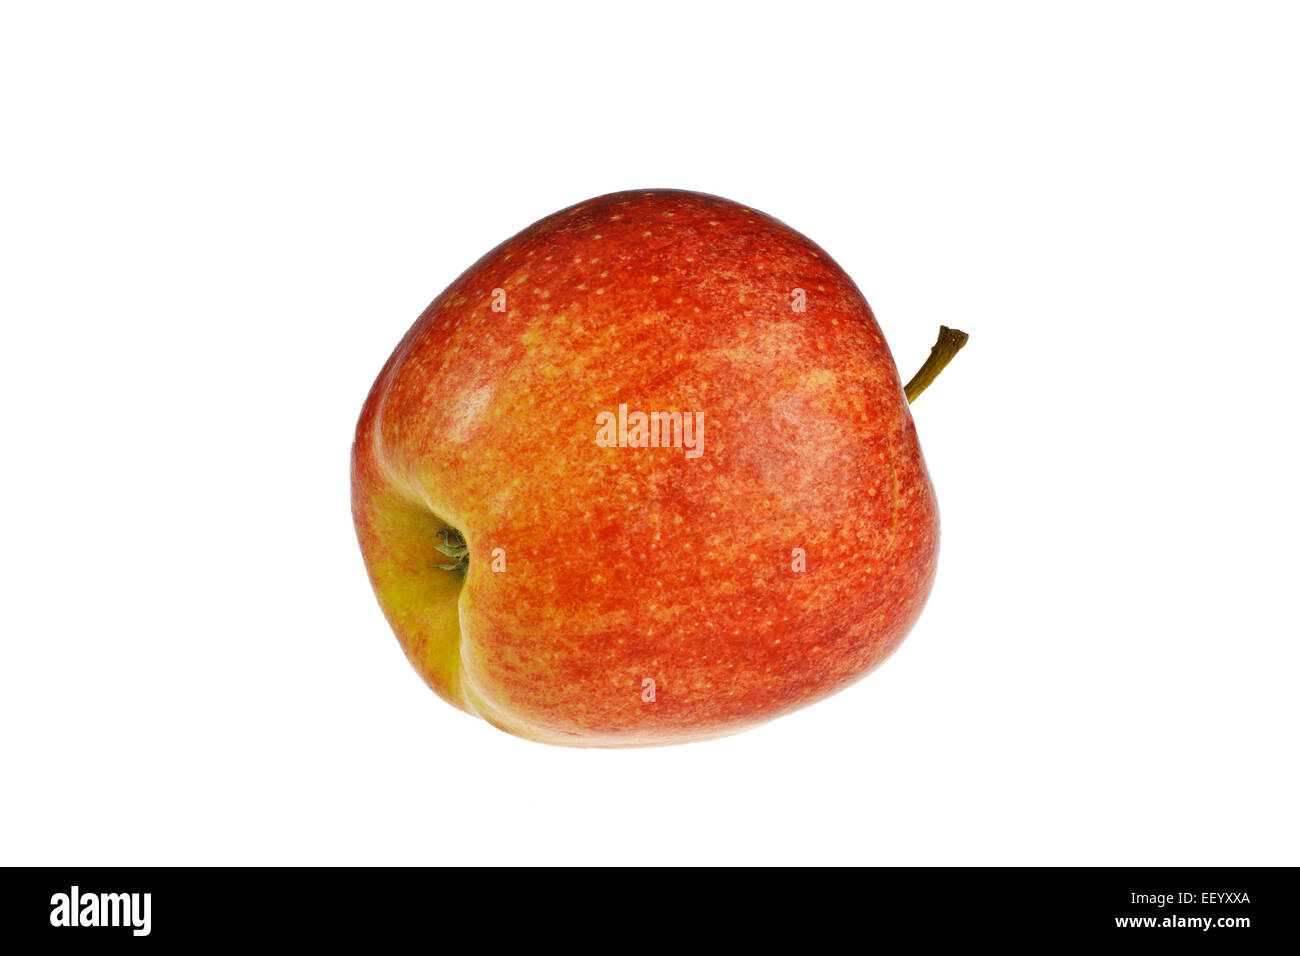 Ein roter Apfel veröffentlicht Stockfoto